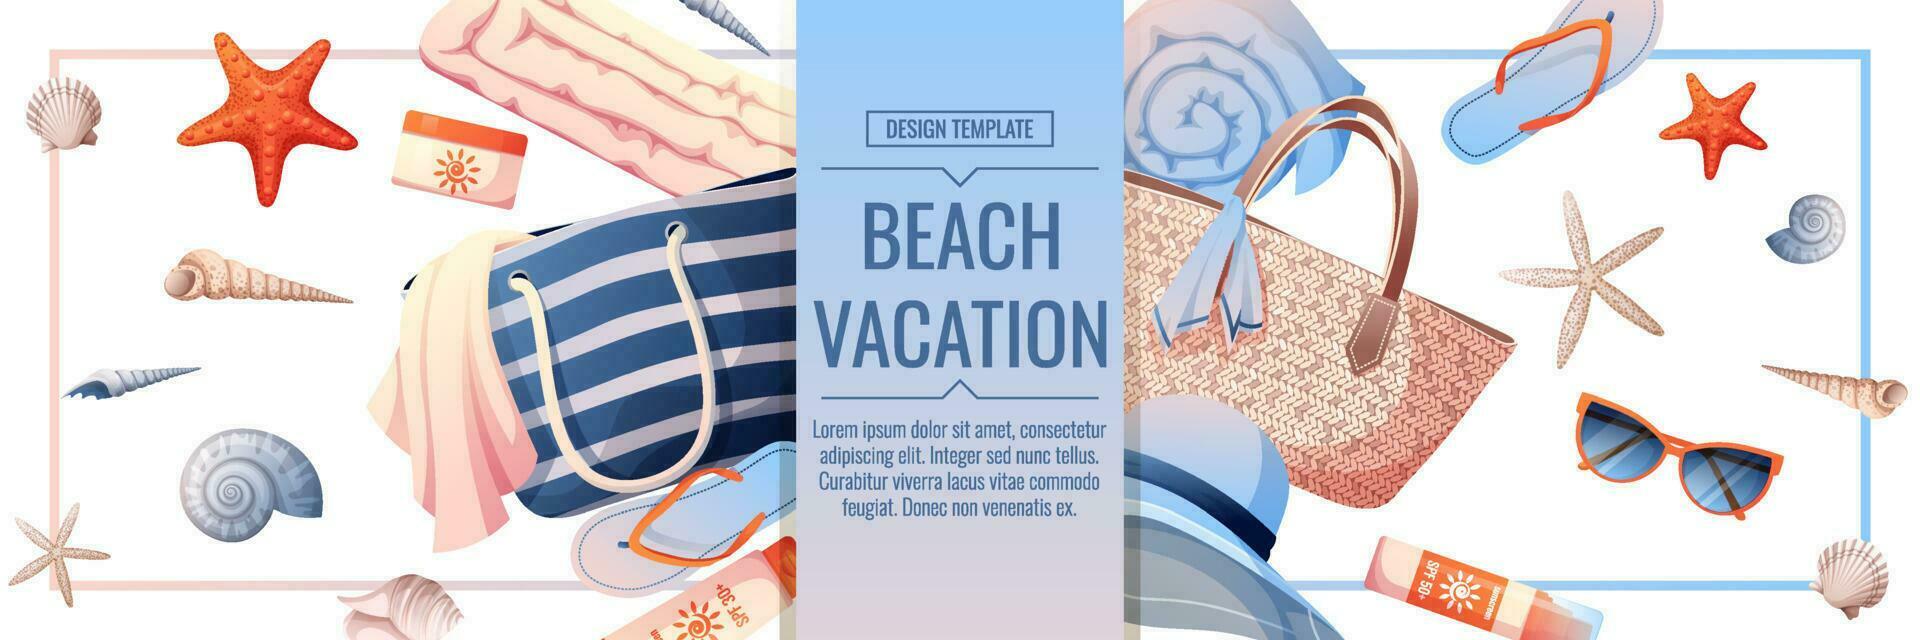 Strand Banner mit Zubehör zum entspannend durch das Meer. Strand Tasche, Sonnencreme, Gläser, Handtuch, Muscheln. Webbaner, Poster, Flyer, Werbung. vektor